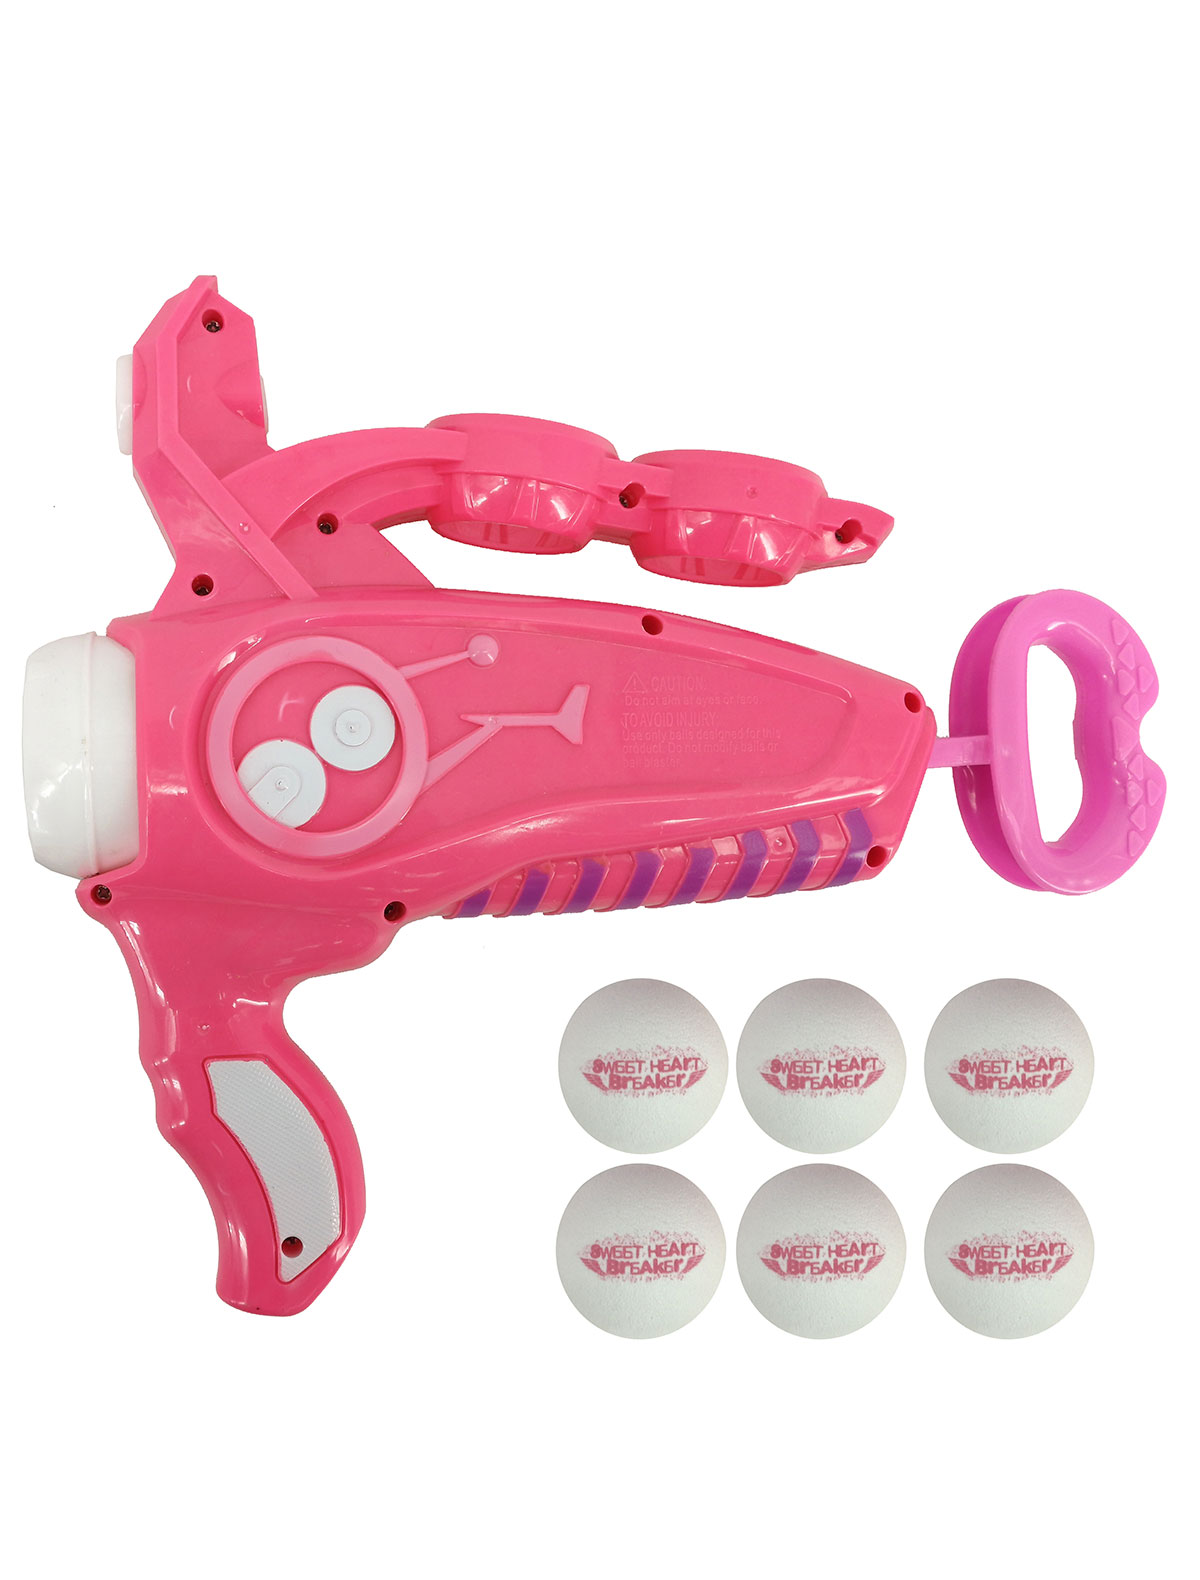 2213443, Игрушка Toy Target, розовый, 7134529071654  - купить со скидкой